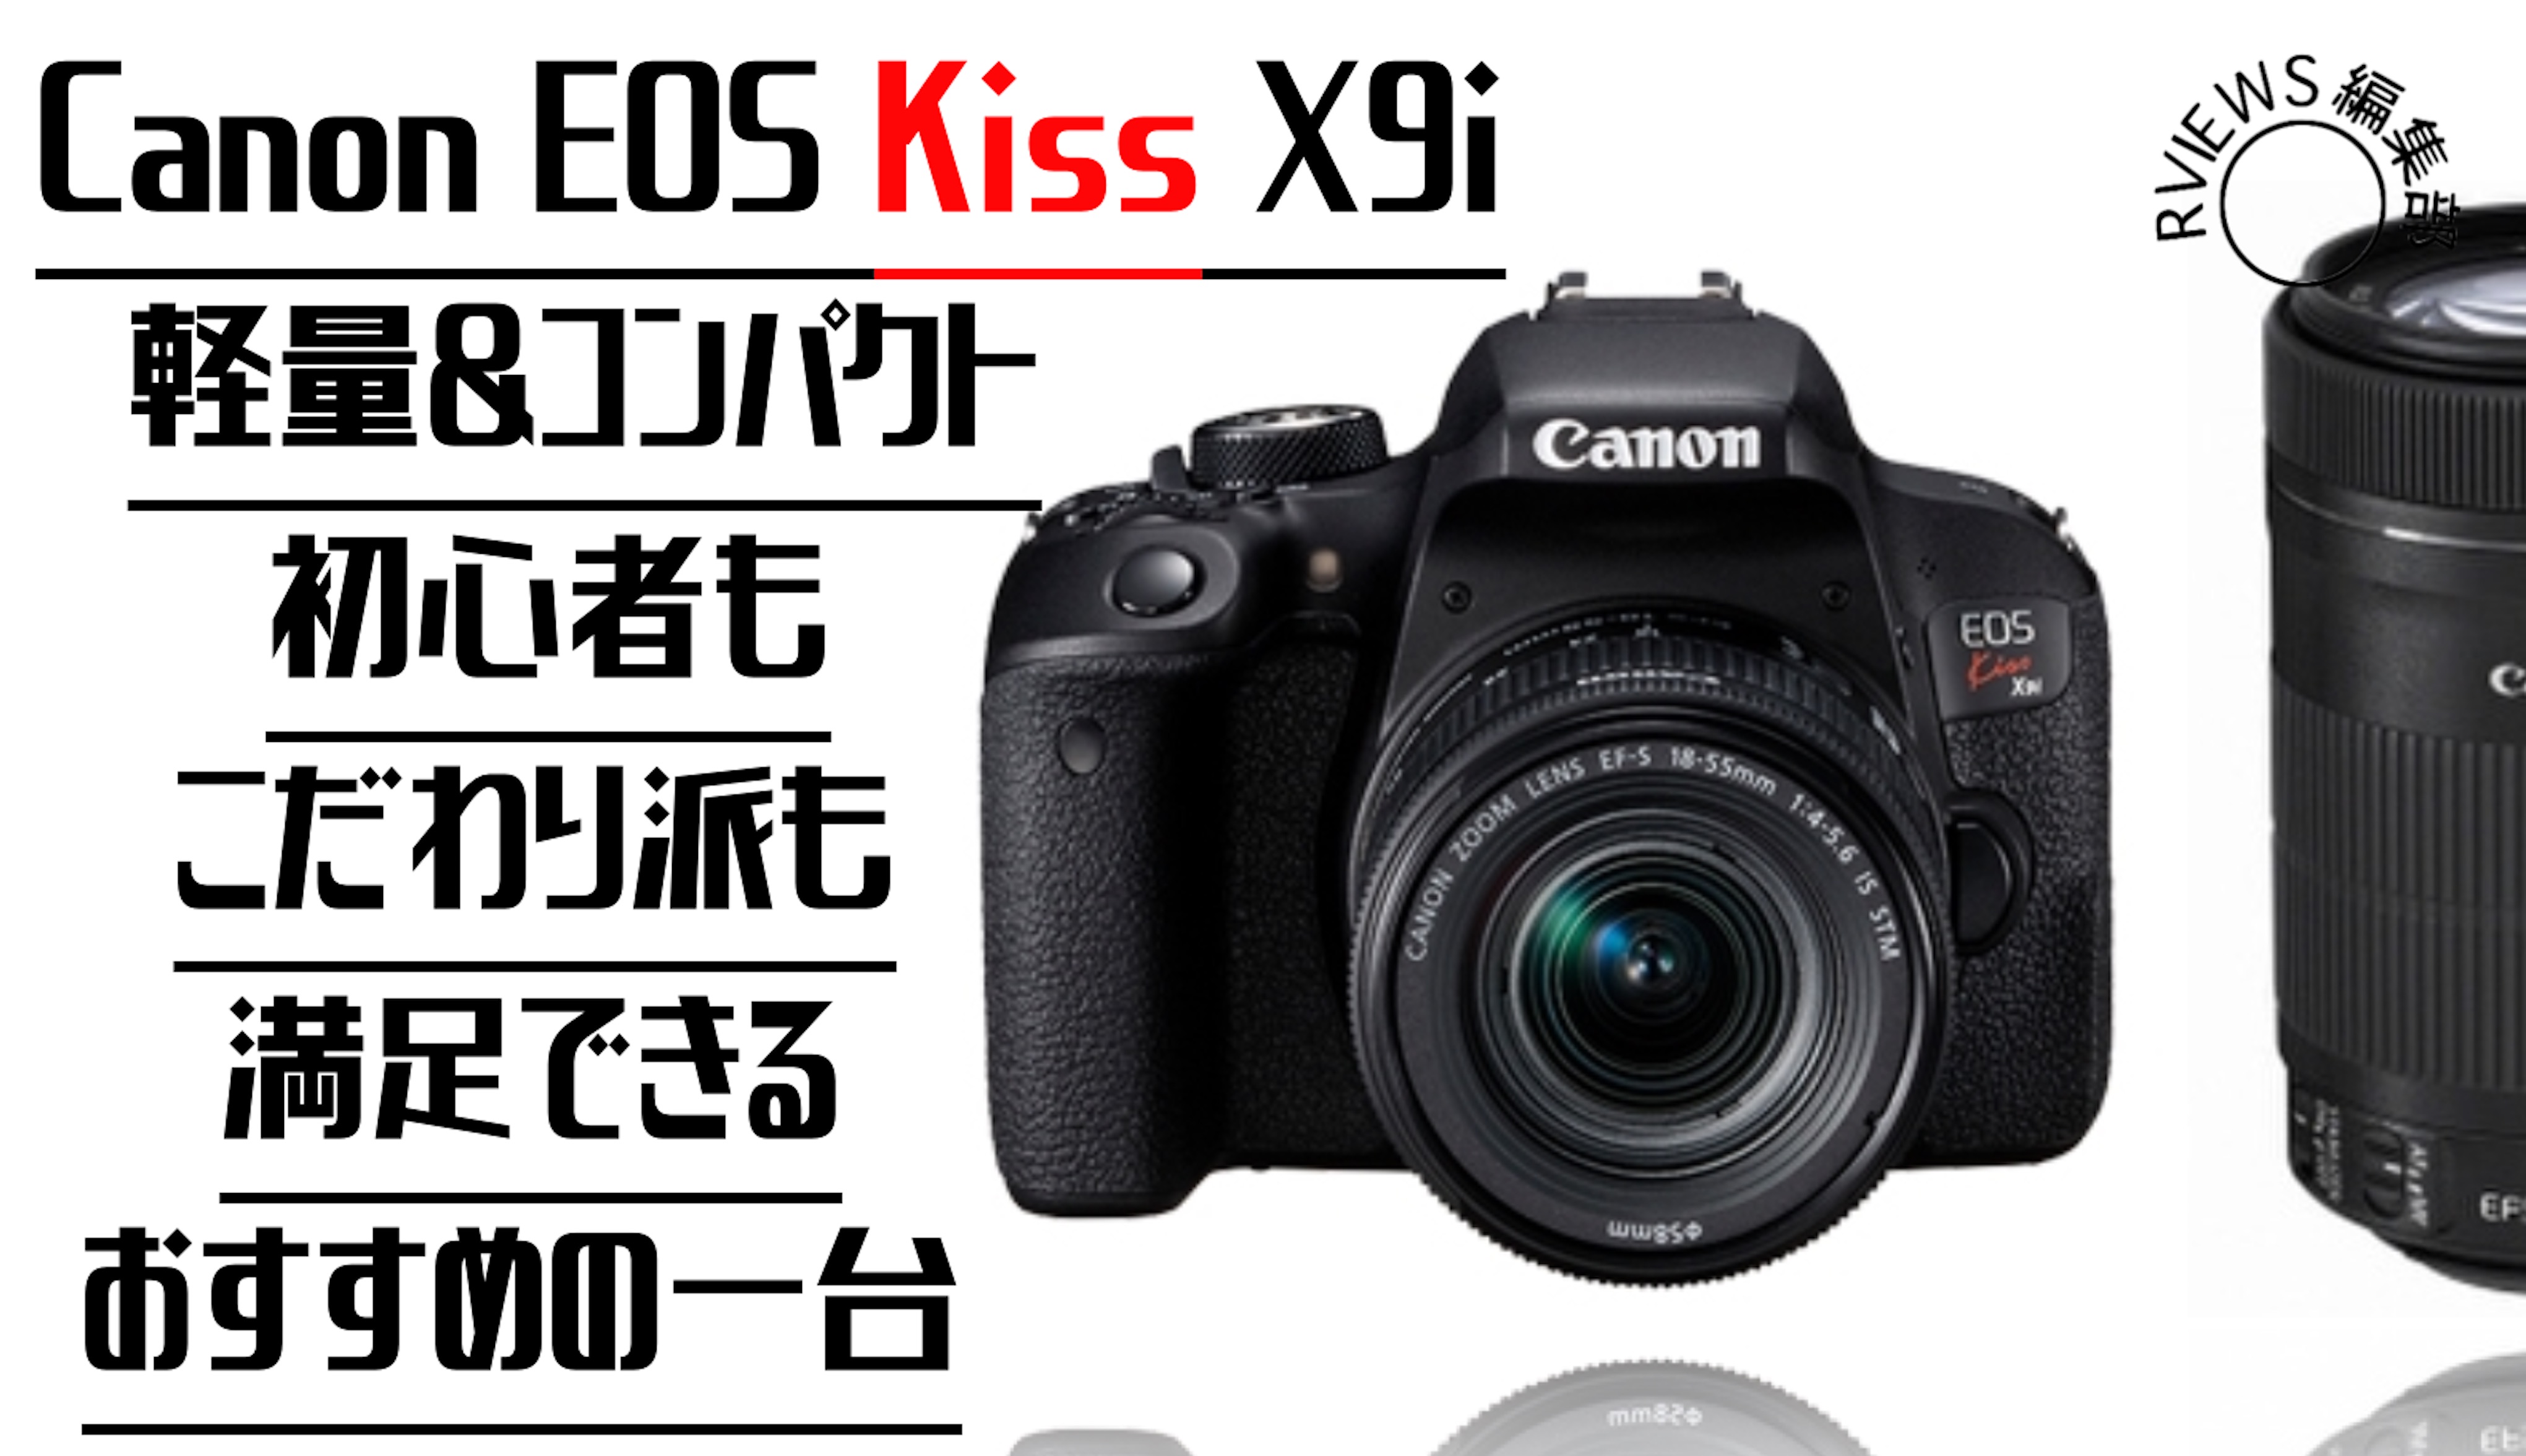 安いのに超綺麗！【Canon EOS kiss x9i レビュー 】軽量コンパクトで初心者におすすめ | Picky's